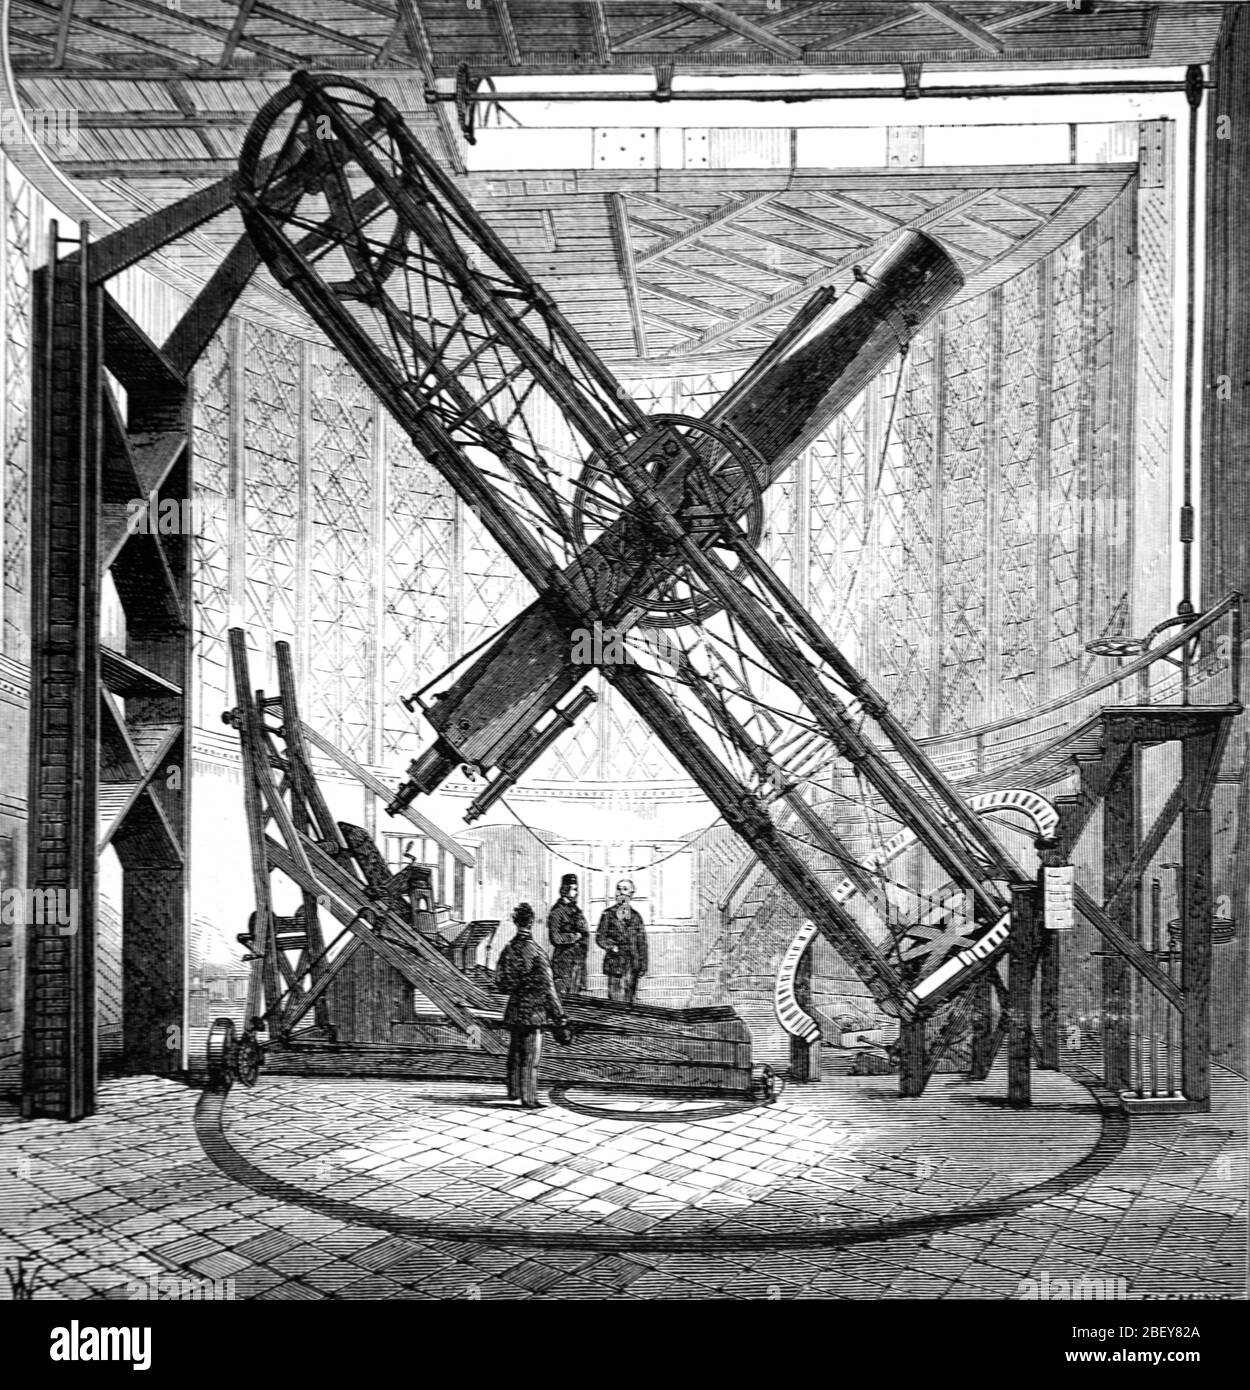 Telescopio ecuatorial Sheepshanks en el Observatorio Real de Greenwich Greenwich Londres Inglaterra Reino Unido. Ilustración o grabado Vintage o Old 1888 Foto de stock